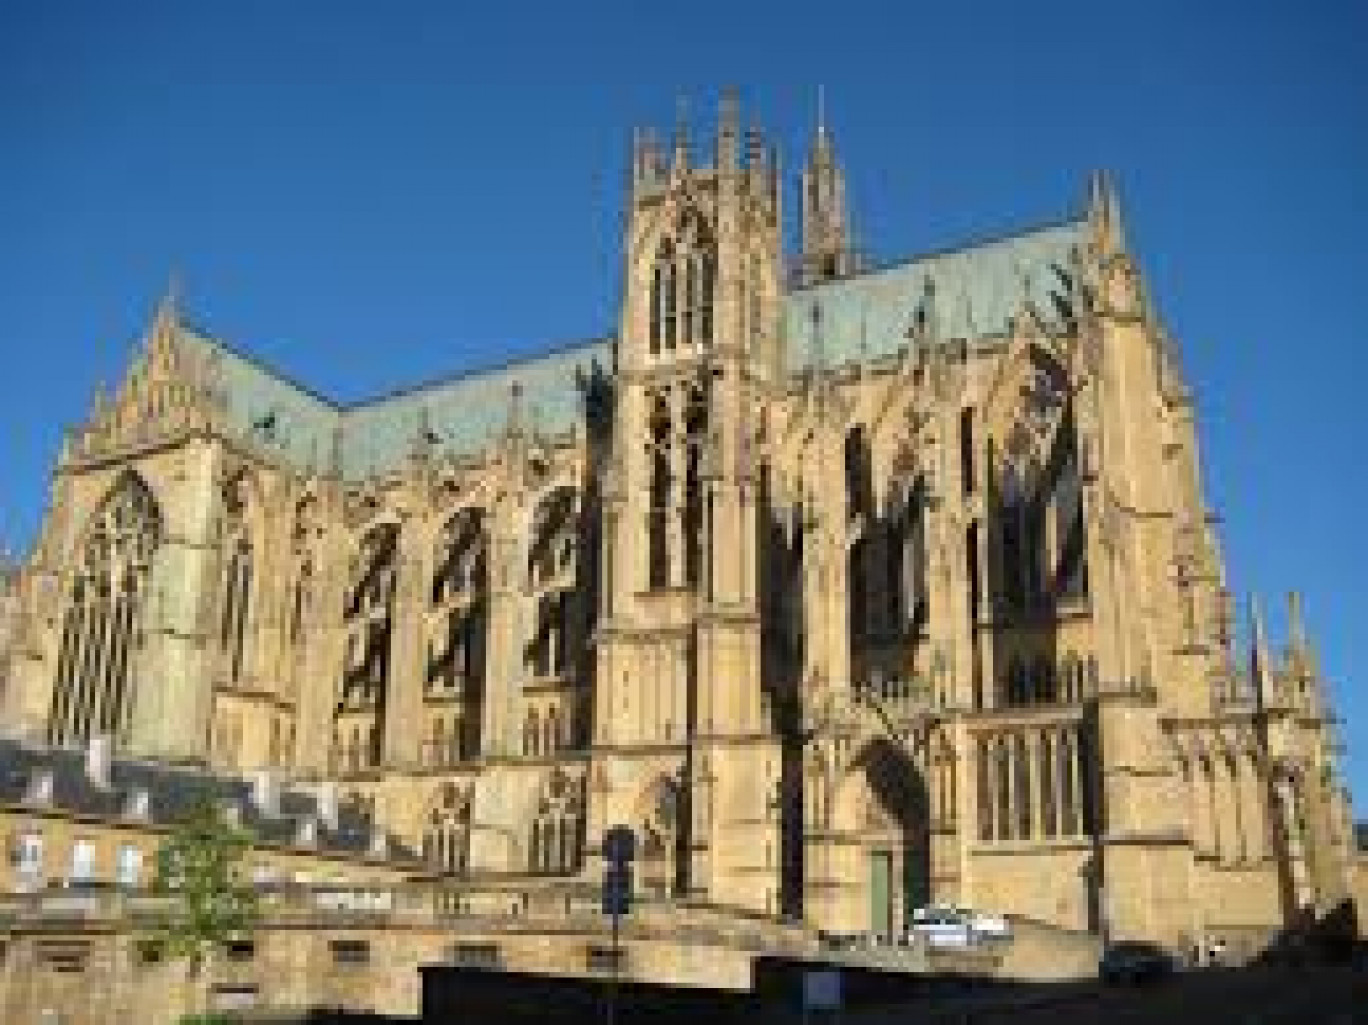 La cathédrale Saint-Étienne de Metz célèbre ses 800 ans d’existence